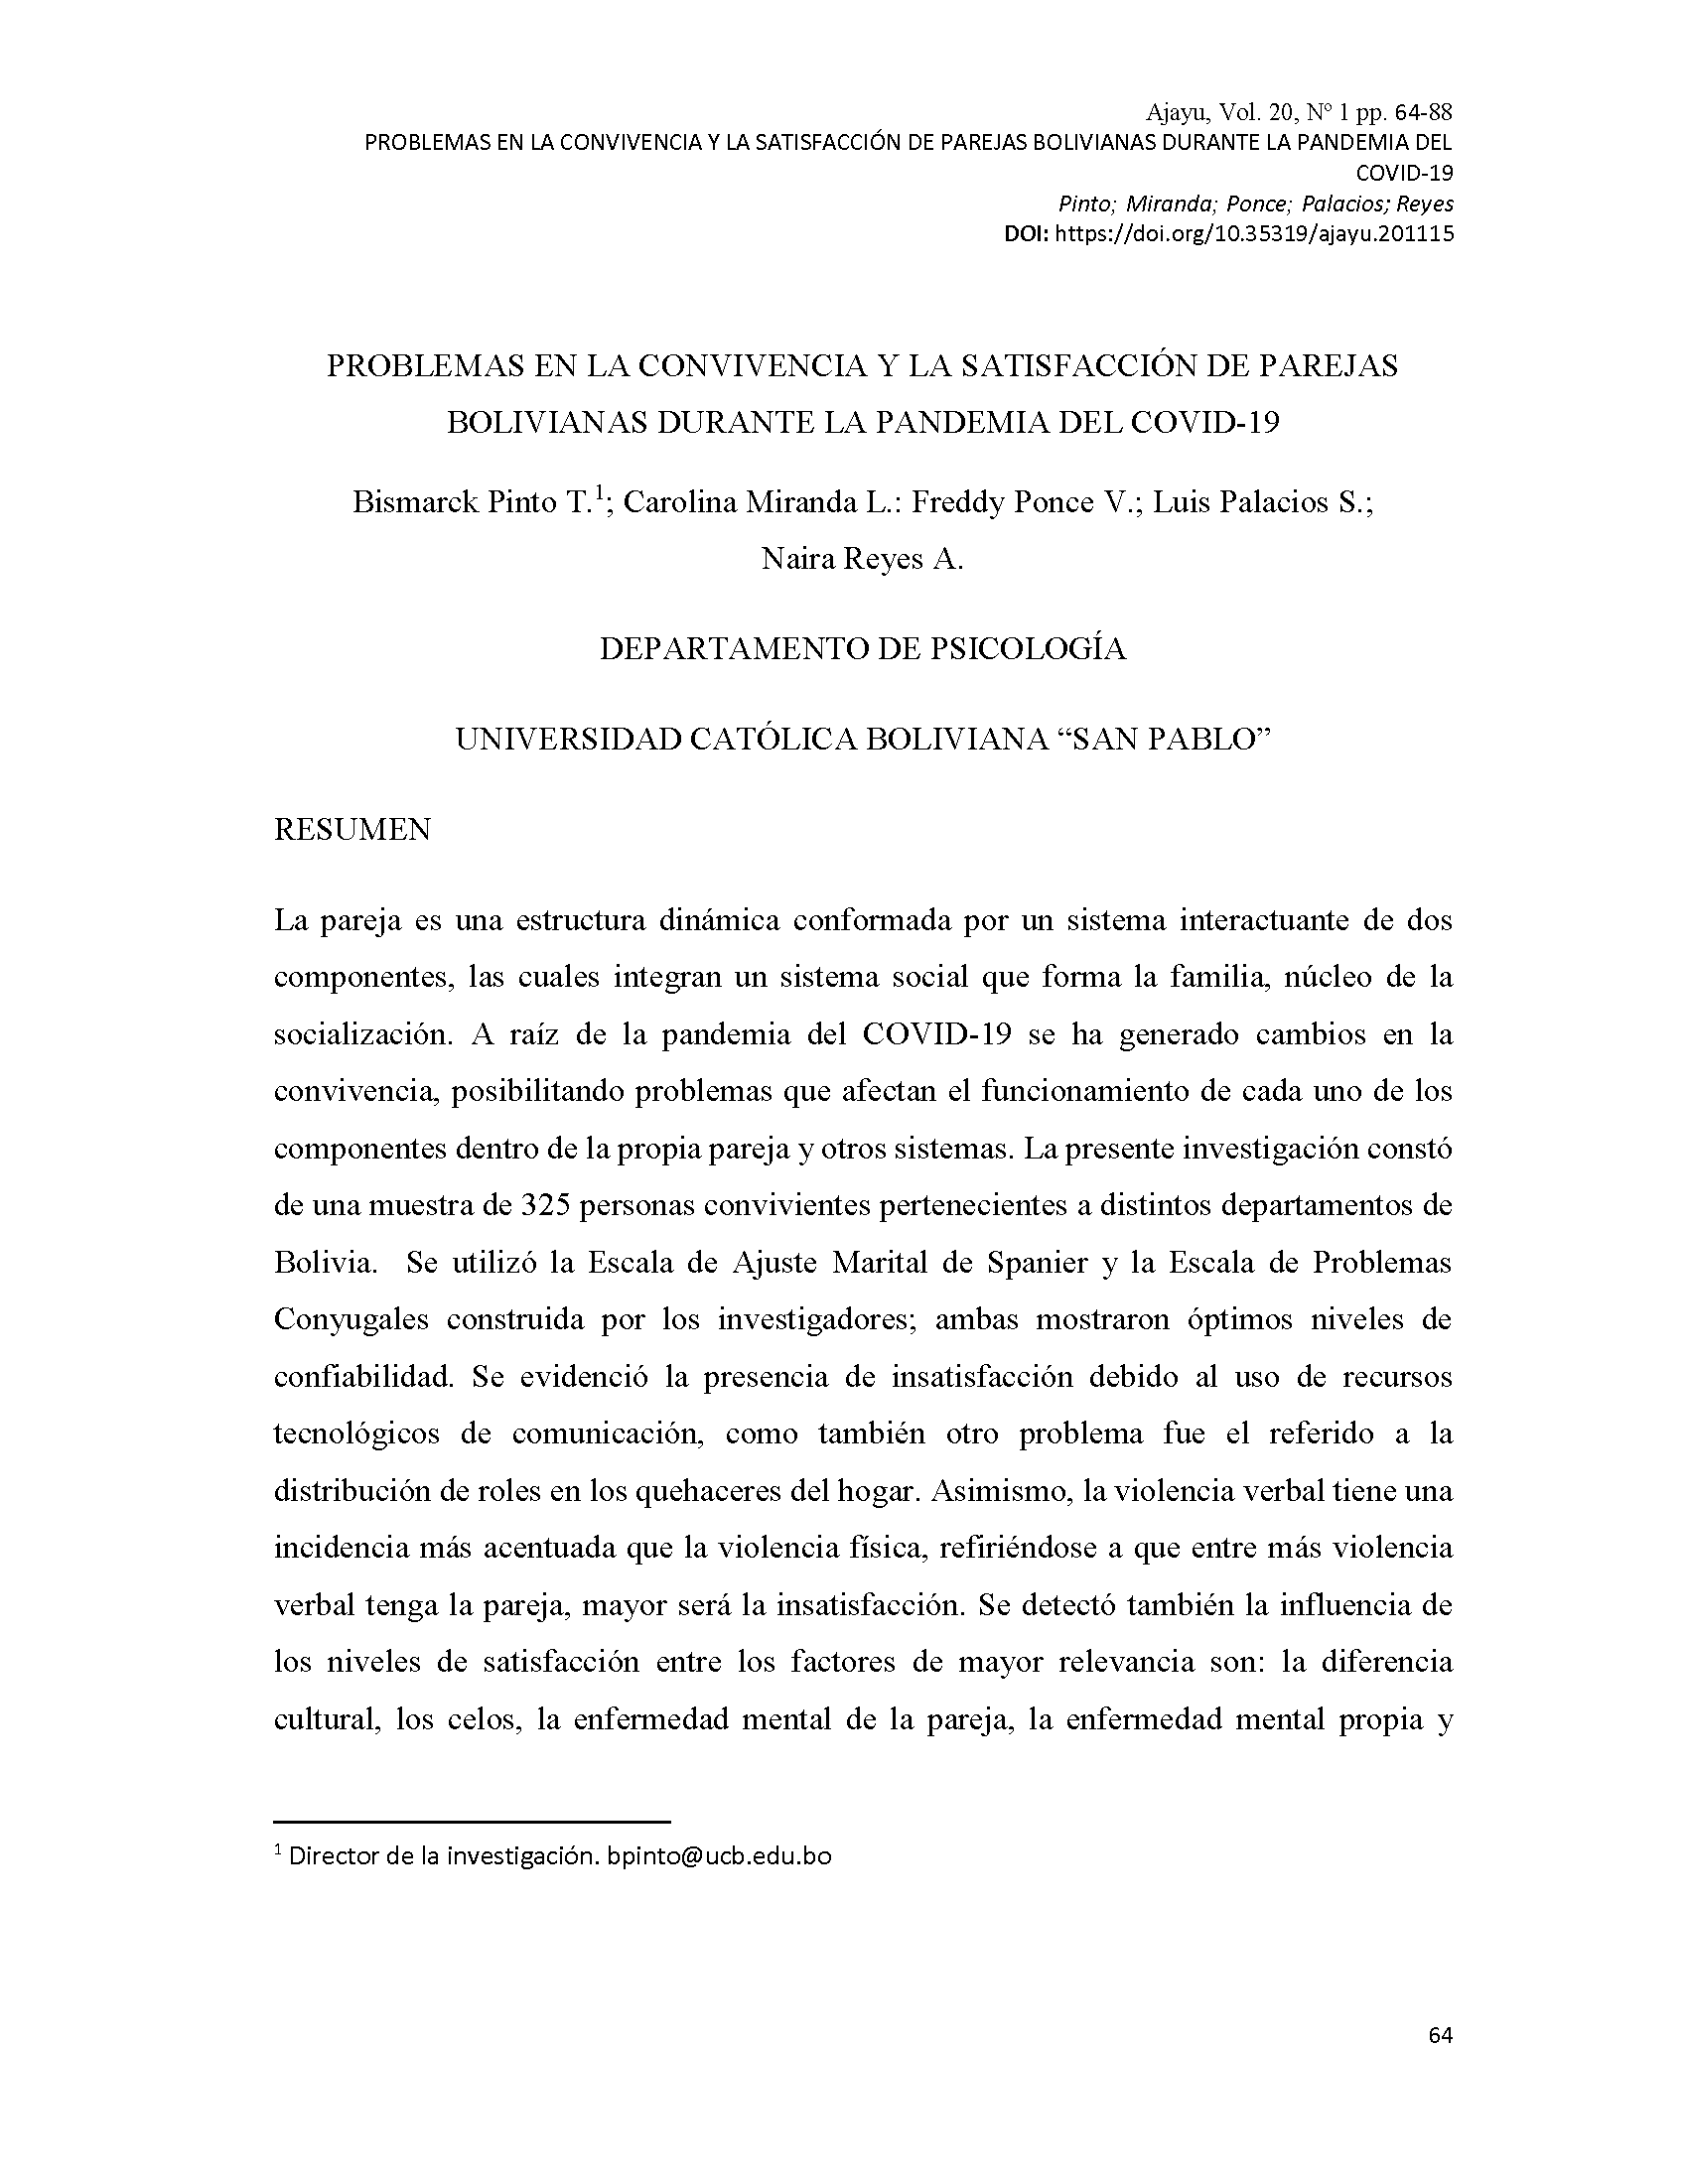 Problemas en la convivencia y la satisfacción de parejas bolivianas durante la pandemia del COVID-19